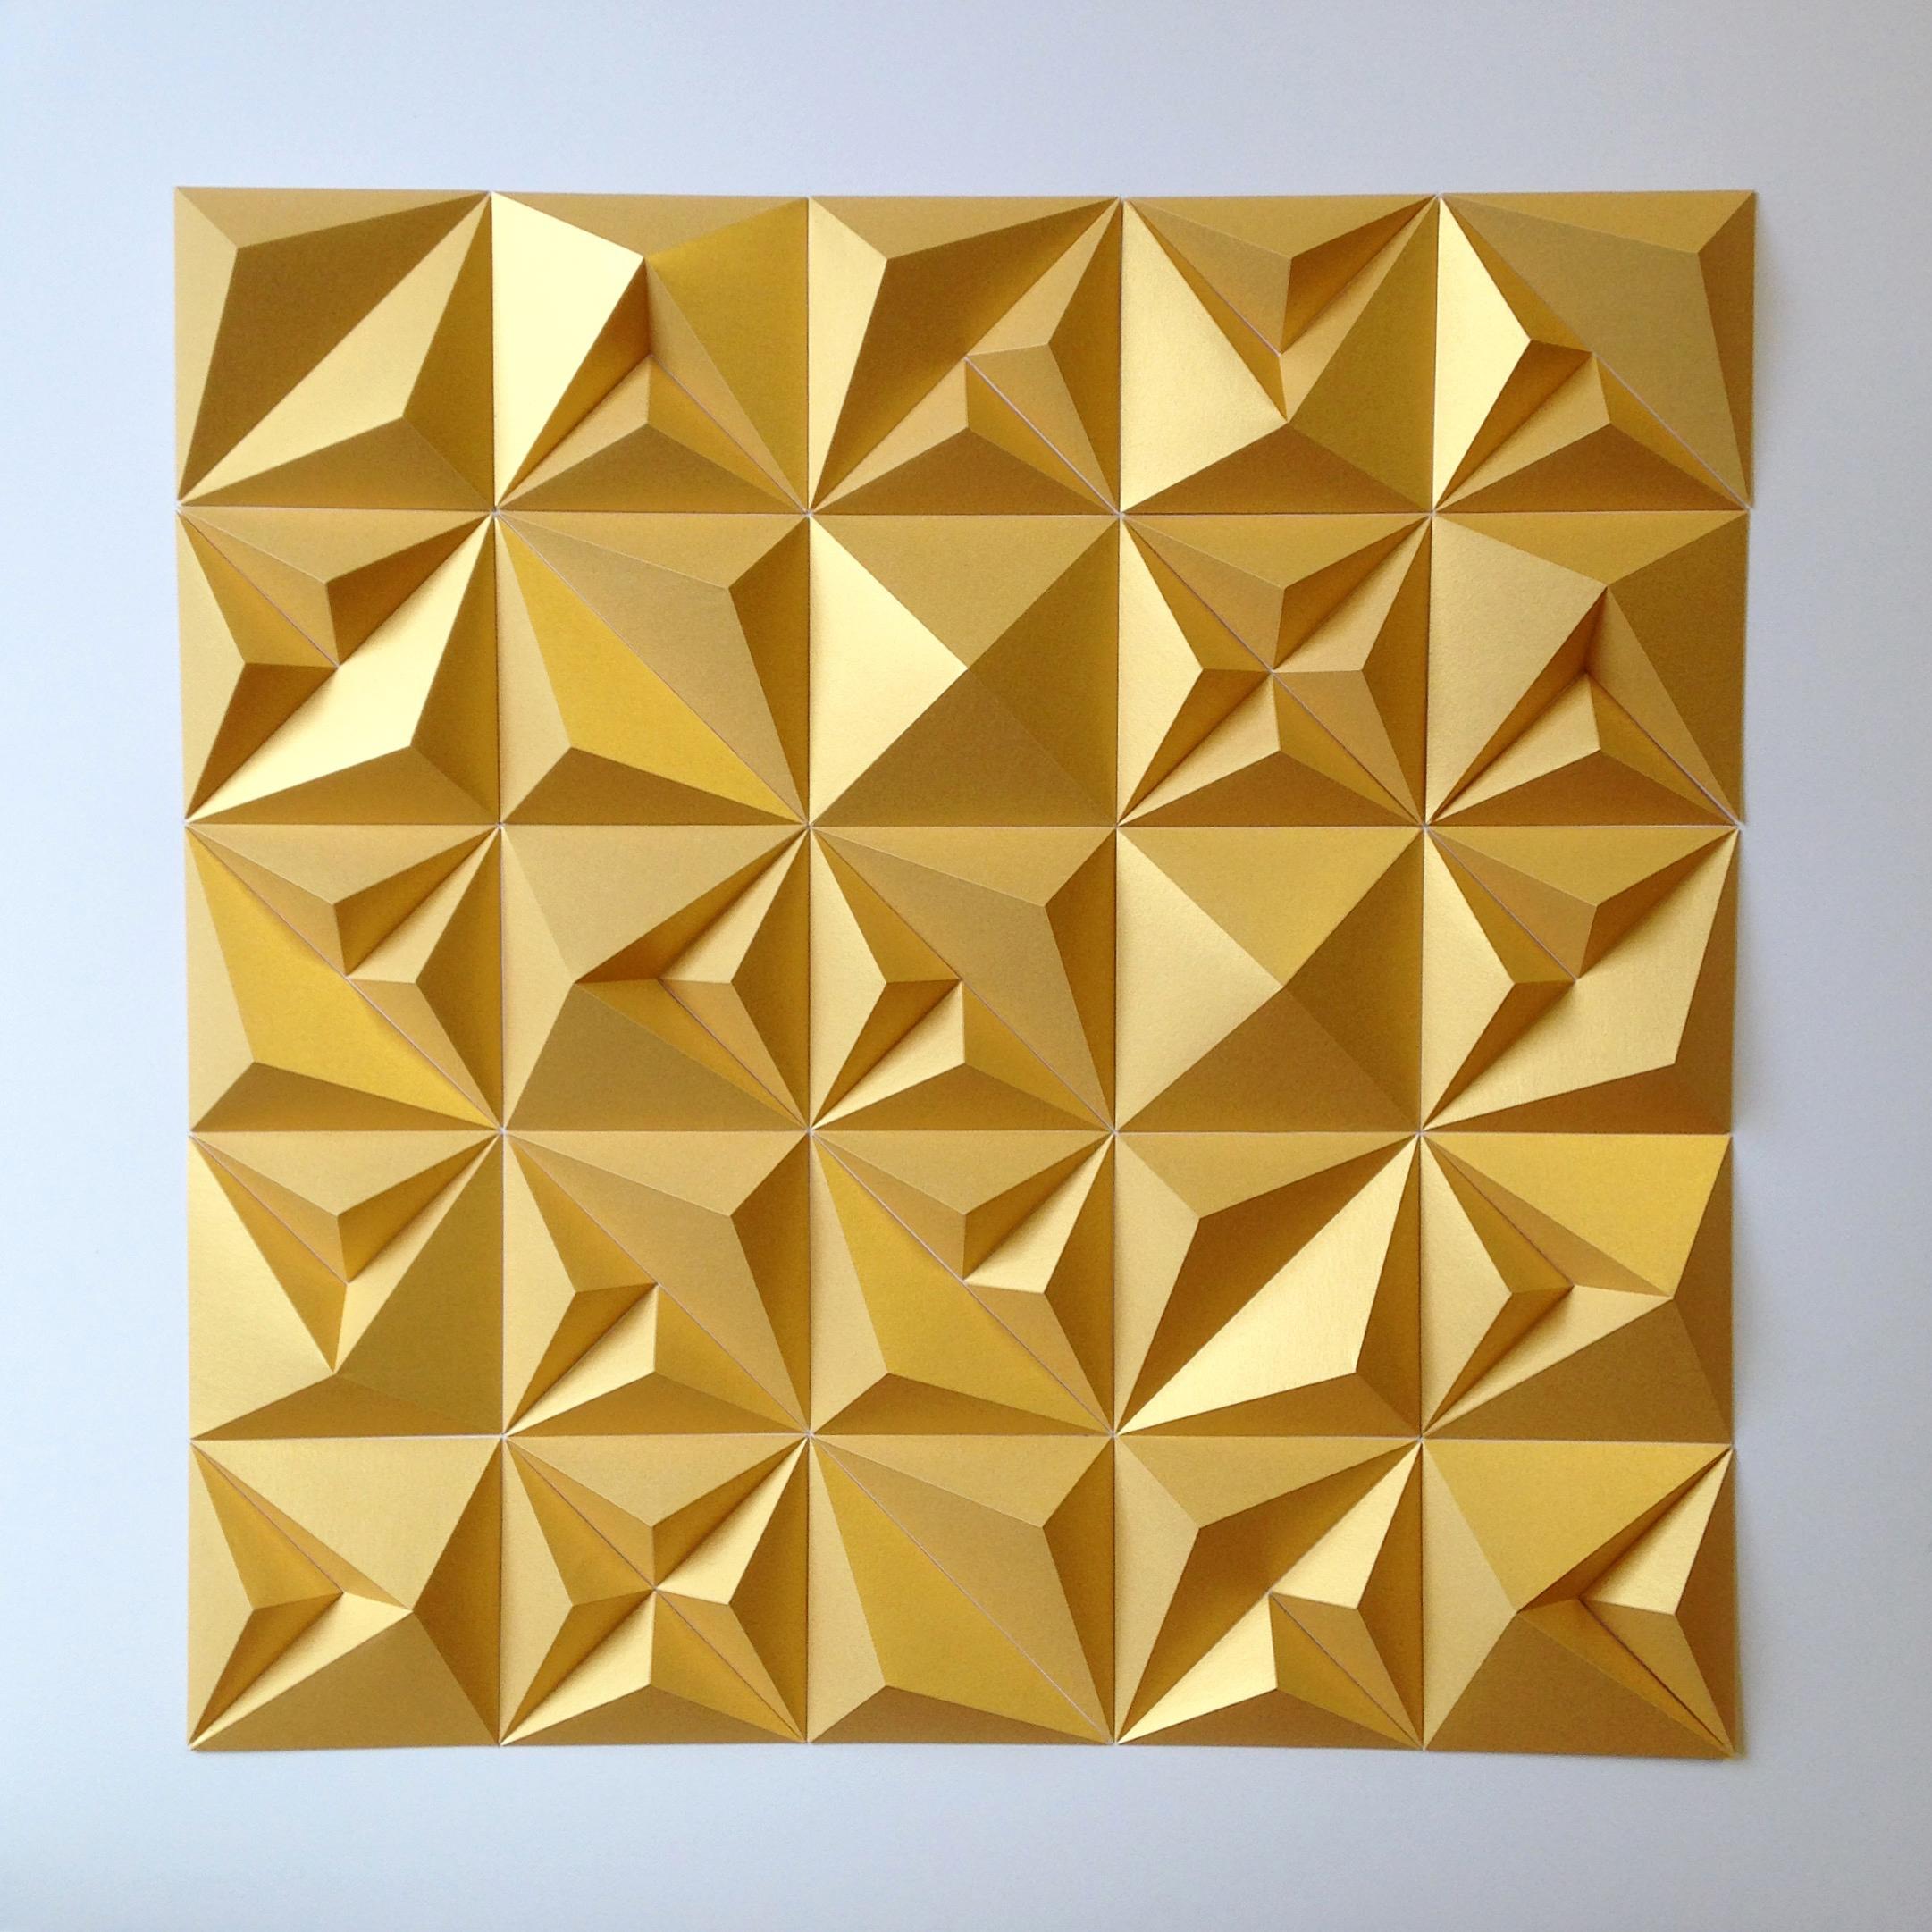 Matt Shlian Abstract Sculpture - RLRR Gold